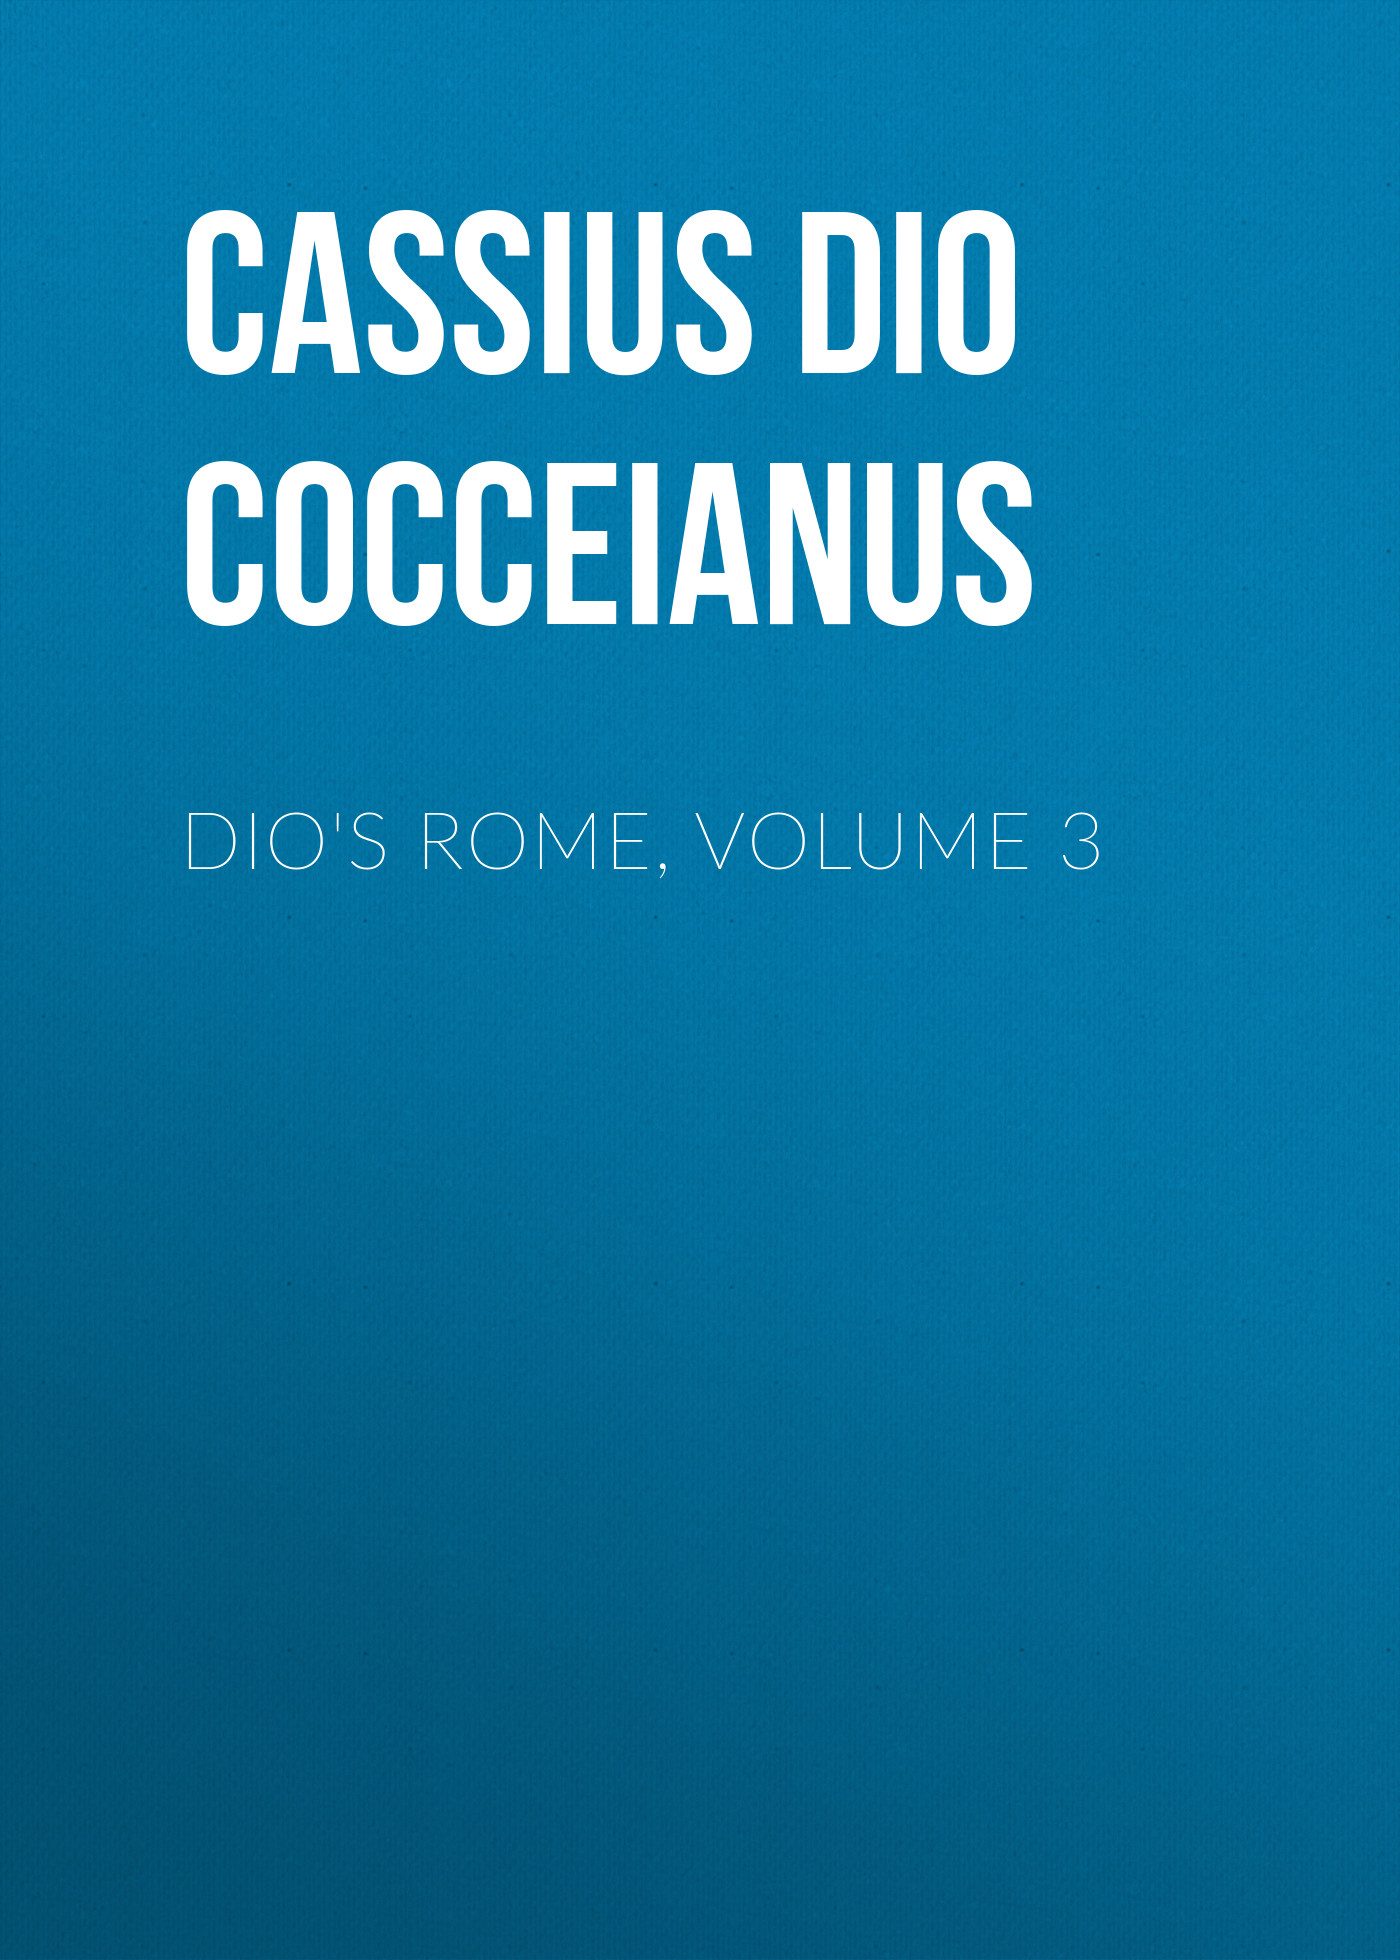 Книга Dio's Rome, Volume 3 из серии , созданная Dio Cocceianus Cassius, может относится к жанру Зарубежная классика, История, Зарубежная образовательная литература, Зарубежная старинная литература. Стоимость электронной книги Dio's Rome, Volume 3 с идентификатором 36366198 составляет 0 руб.